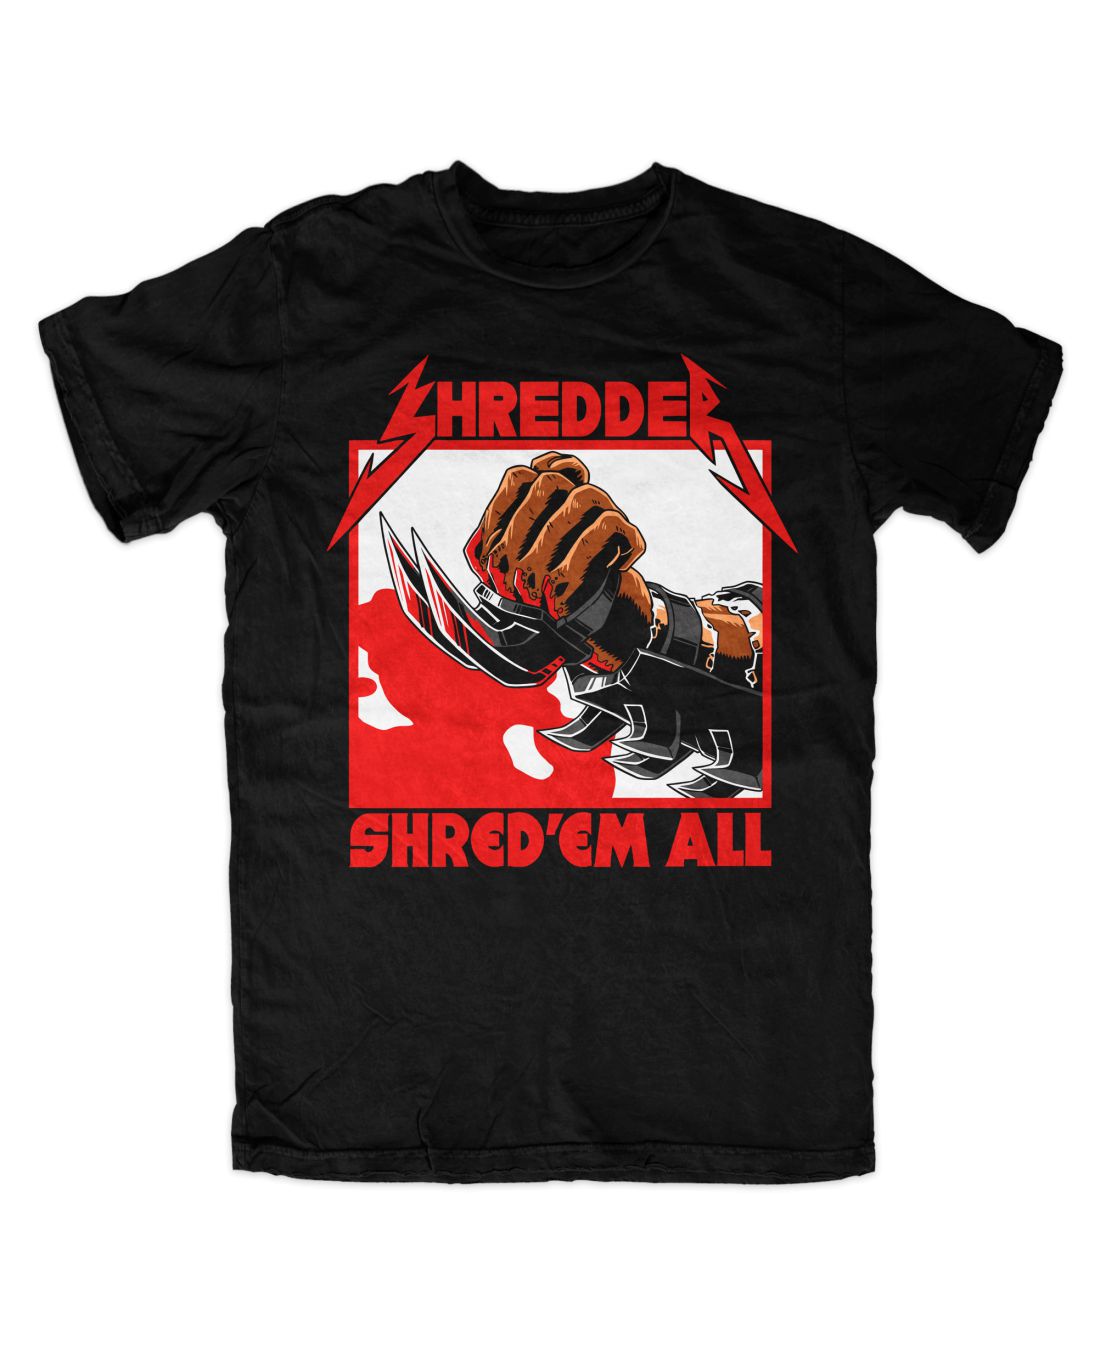 Shredder 001 metal series